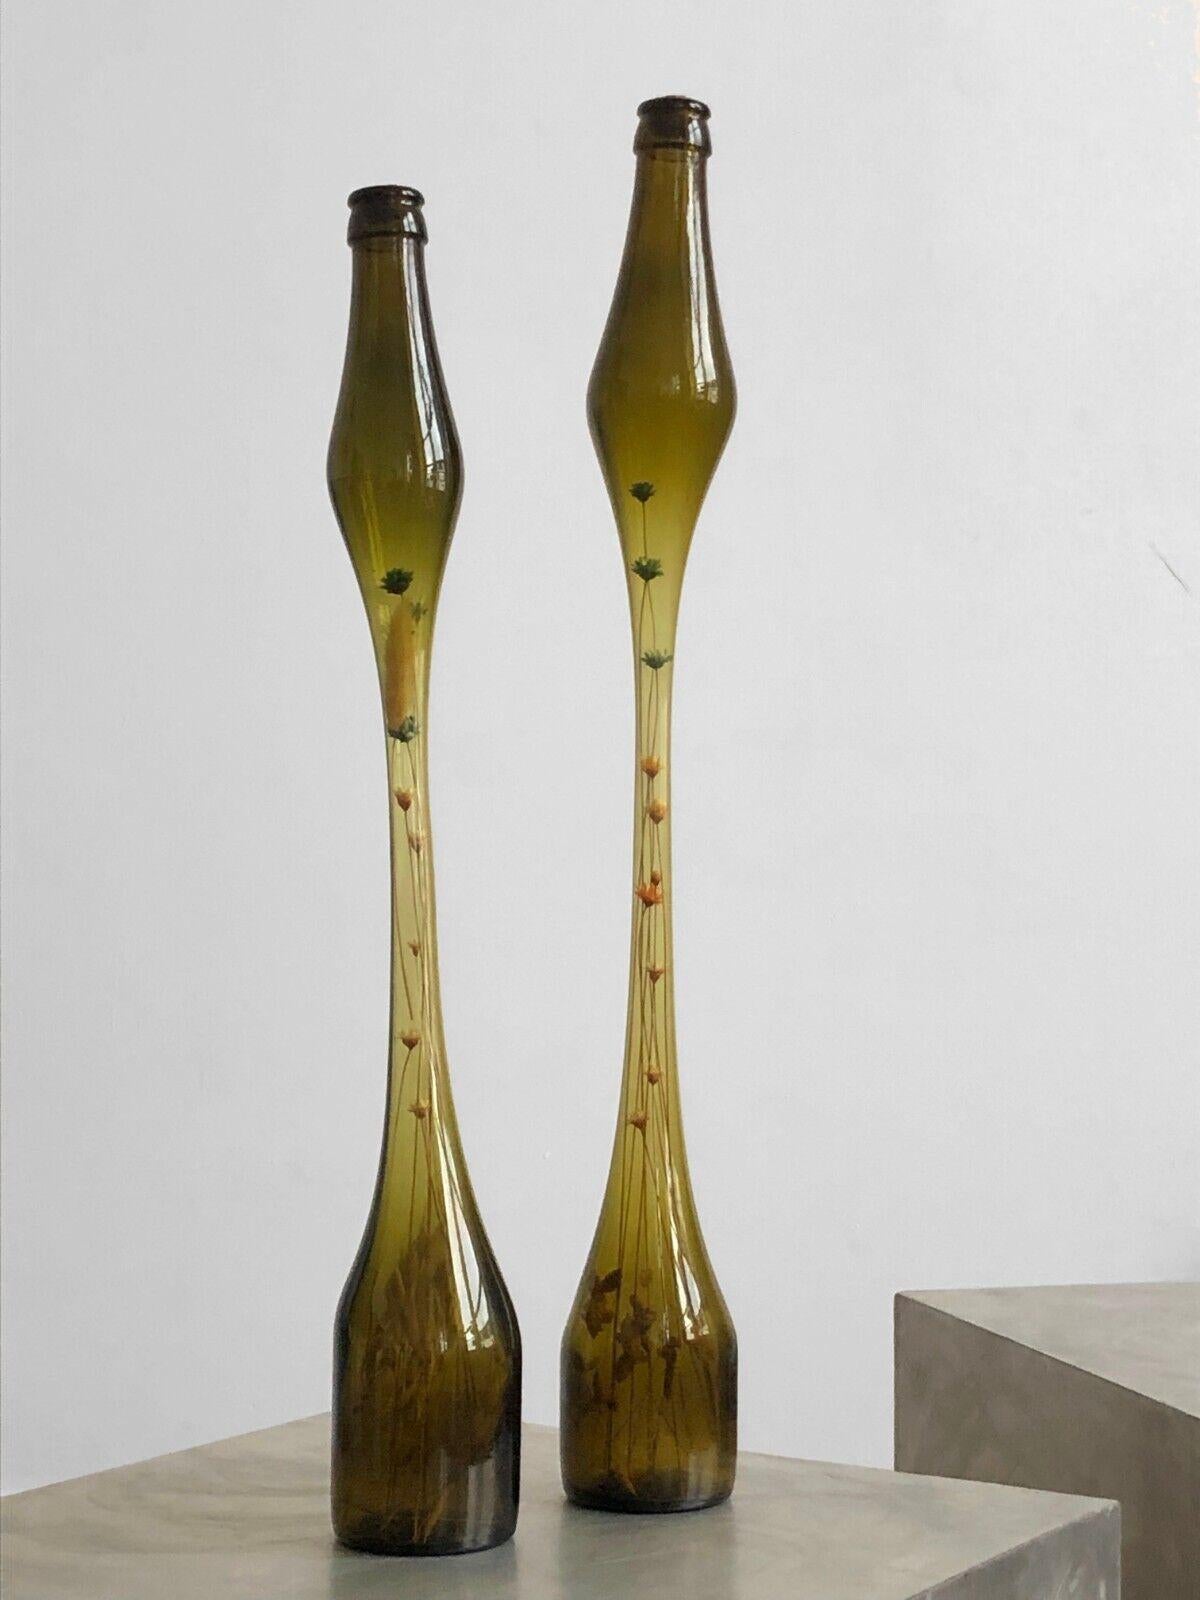 Ein Paar hervorragender konischer Flaschenvasen, Modernist, Form-Libre, mit gestreckten, skulptierten, heiß geschmolzenen Körpern, in bernsteinfarbenem, khakifarbenem mundgeblasenem Glas, einschließlich feiner Kompositionen von Kräutern und